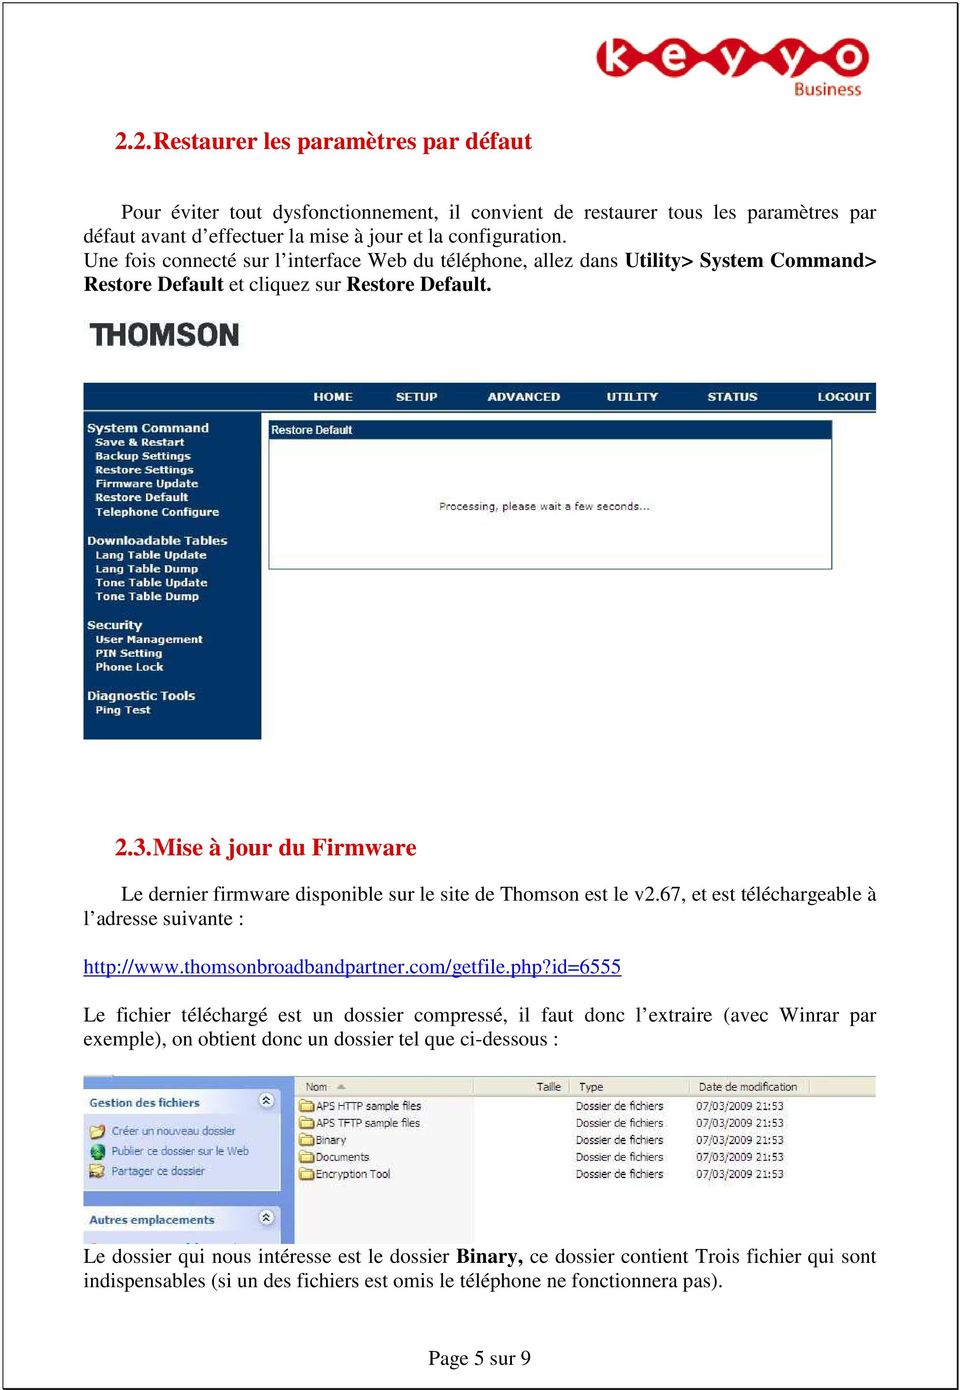 Mise à jour du Firmware Le dernier firmware disponible sur le site de Thomson est le v2.67, et est téléchargeable à l adresse suivante : http://www.thomsonbroadbandpartner.com/getfile.php?